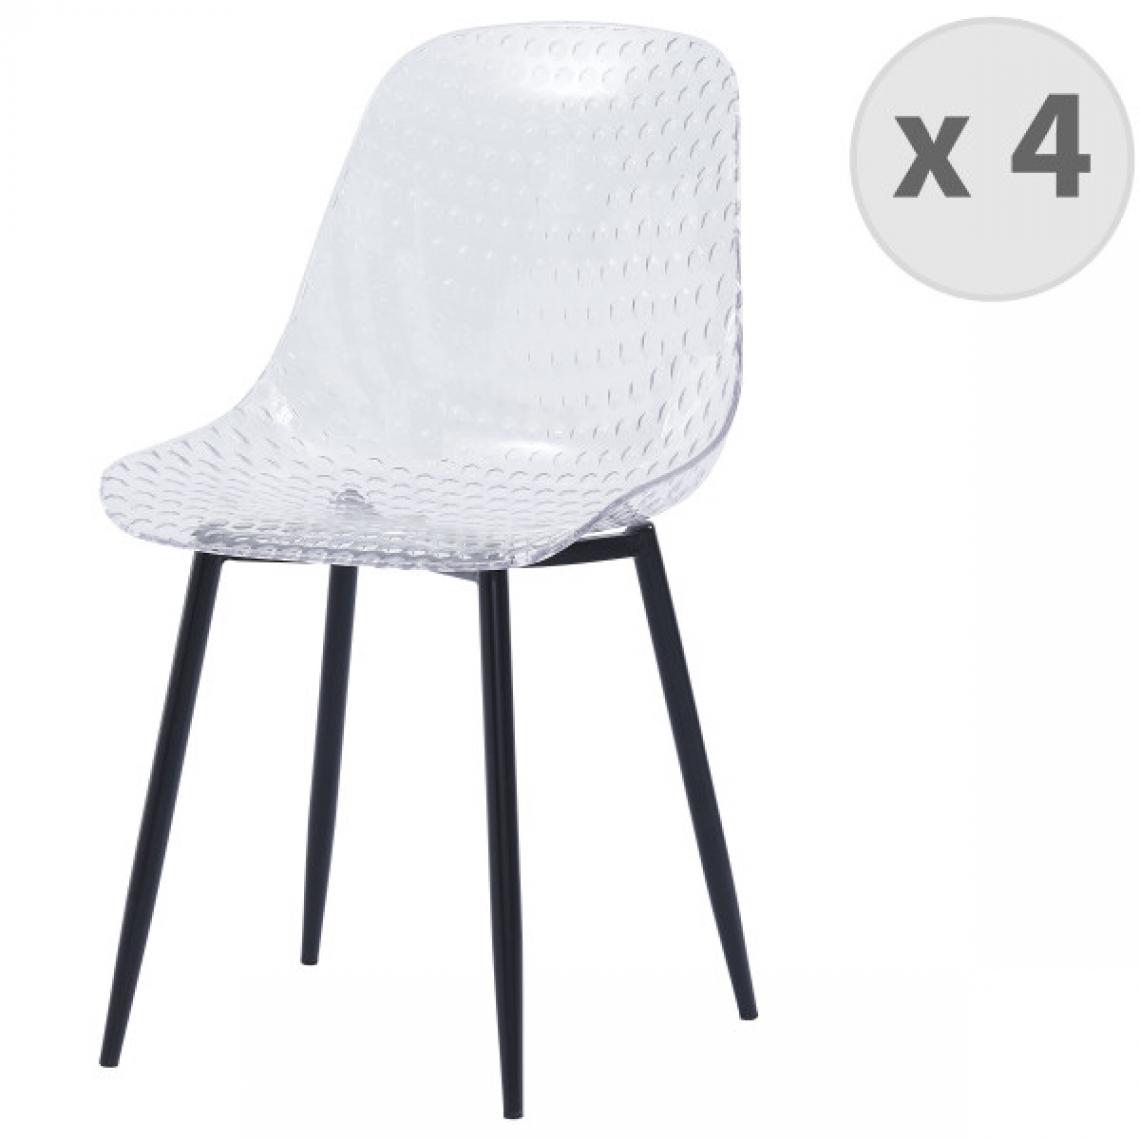 Moloo - GLASS-Chaise design polycarbonate transparent pieds métal noir(x4) - Chaises